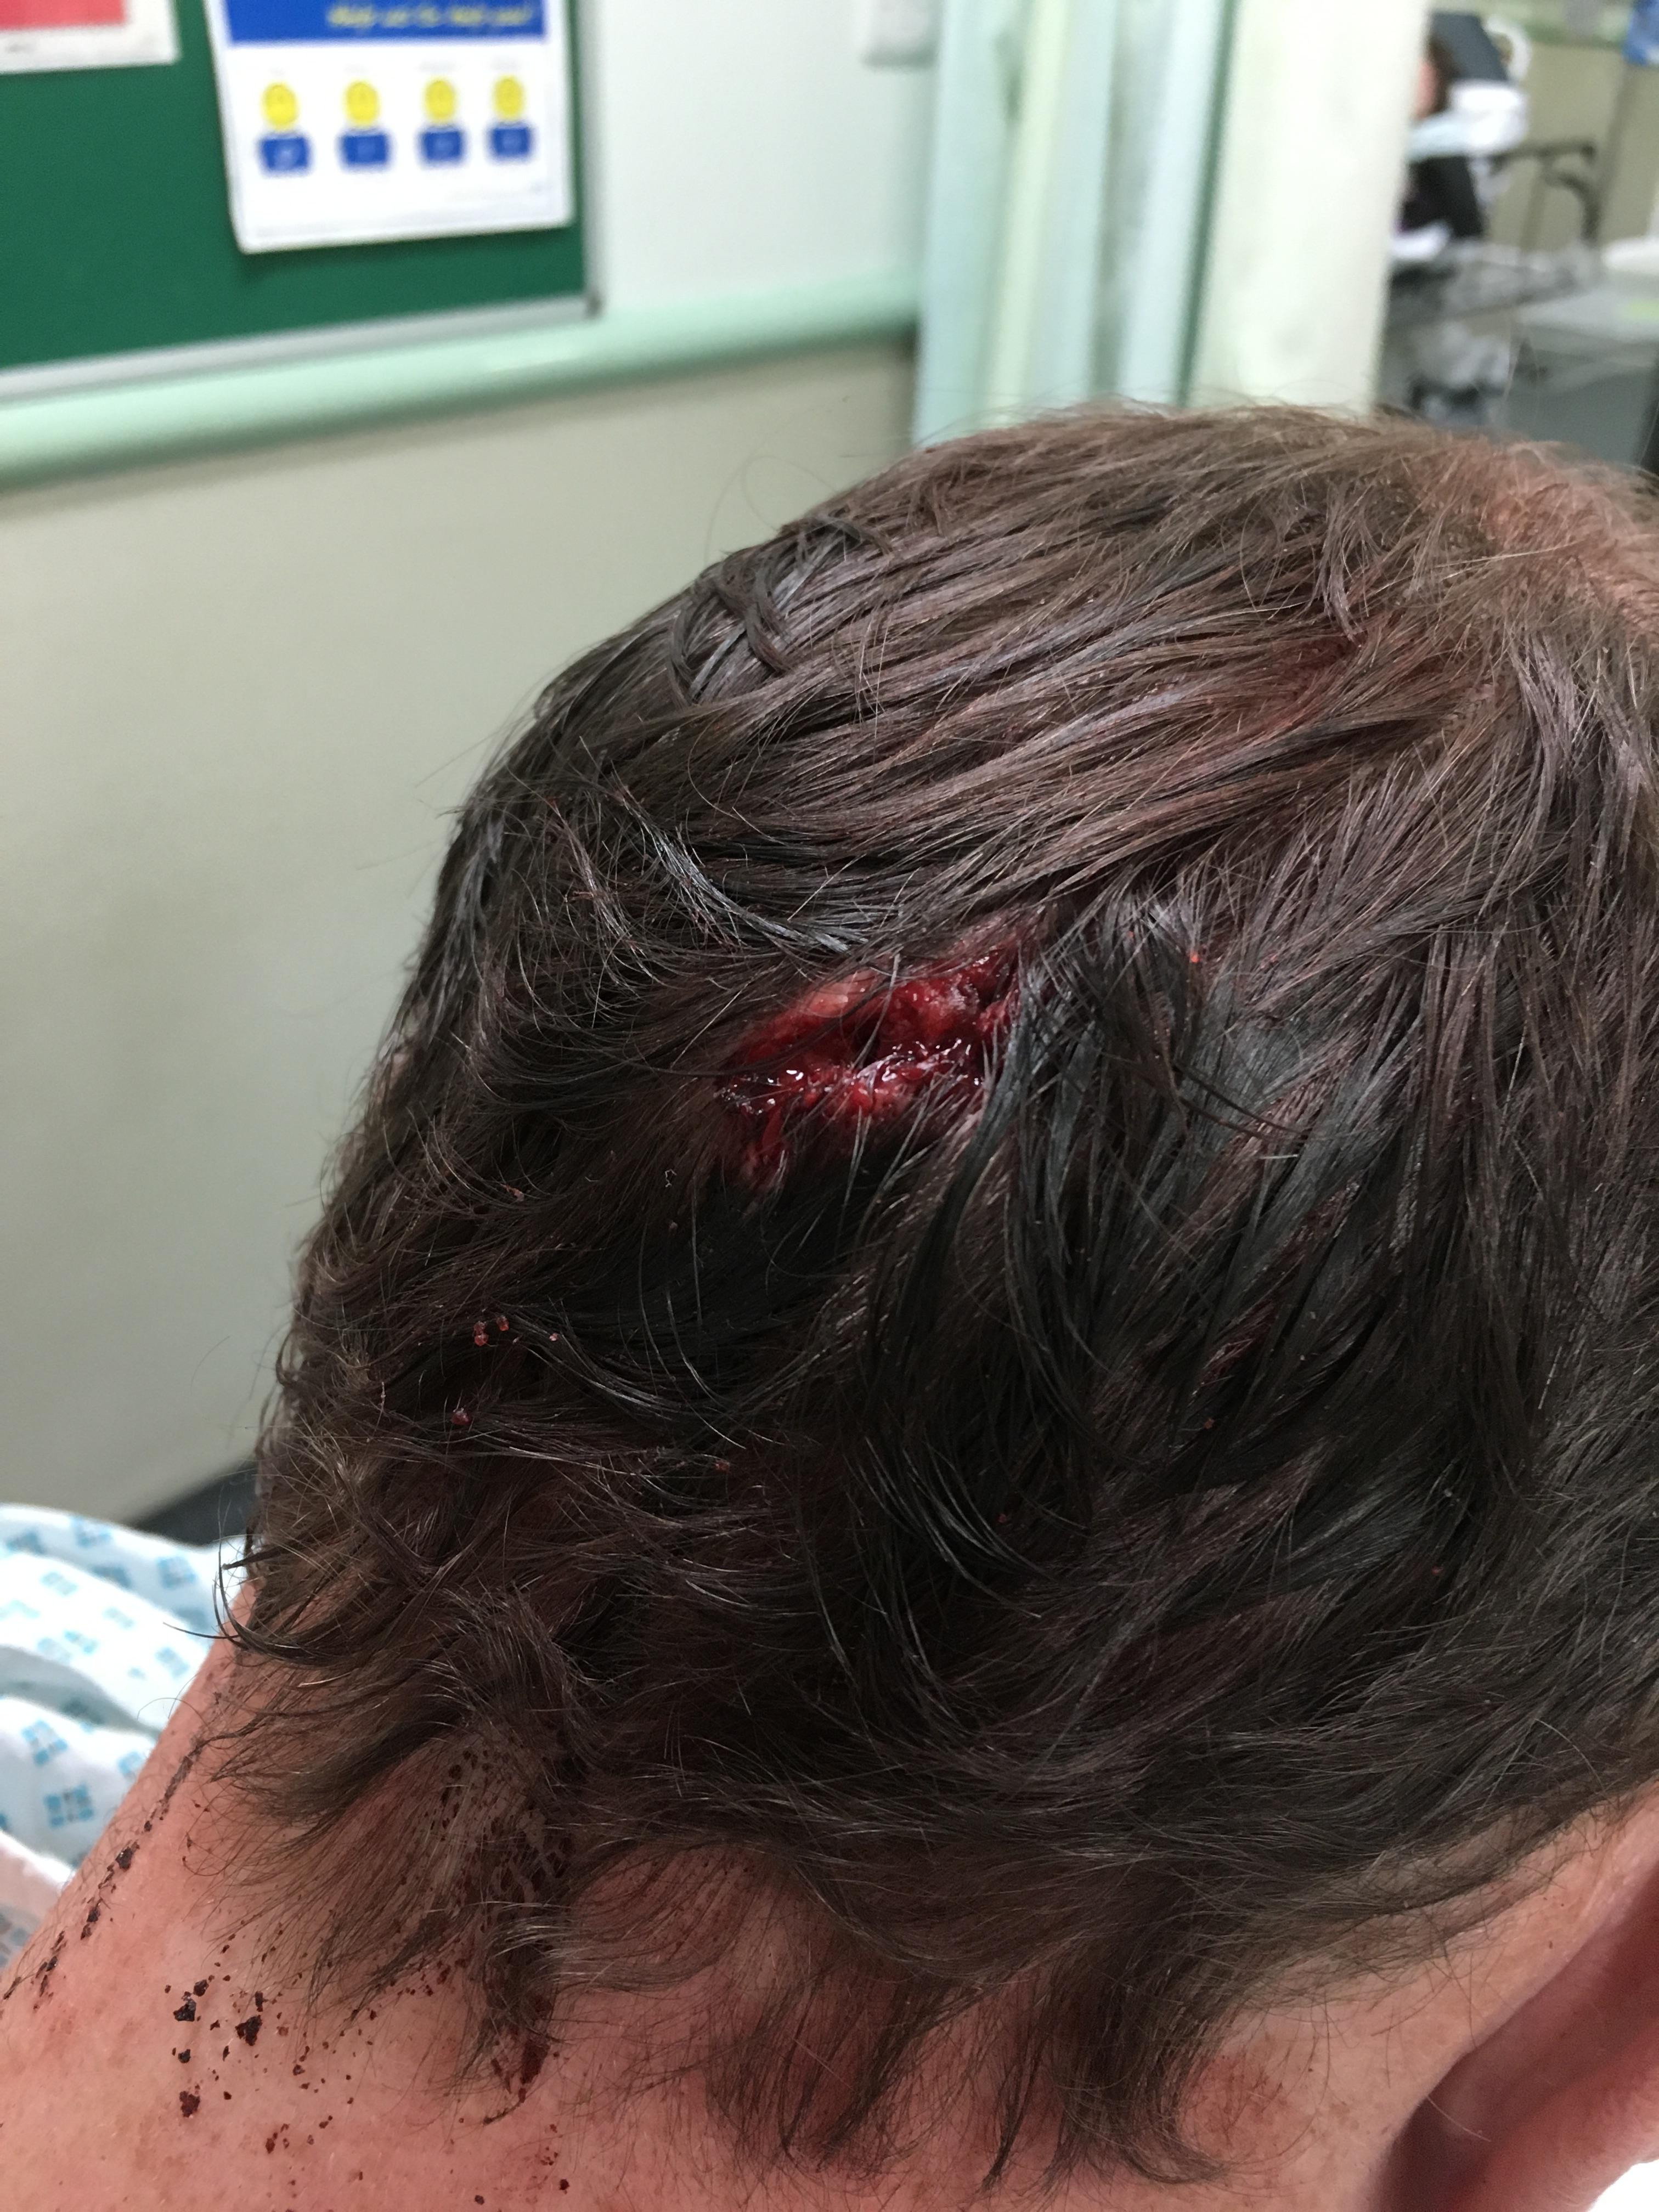 Во время несвязанного инцидента, произошедшего в марте прошлого года, Фредди, которому тогда было 17 лет, был нанесен удар в живот и ногу в неспровоцированной атаке во время игры в футбол в Гизели